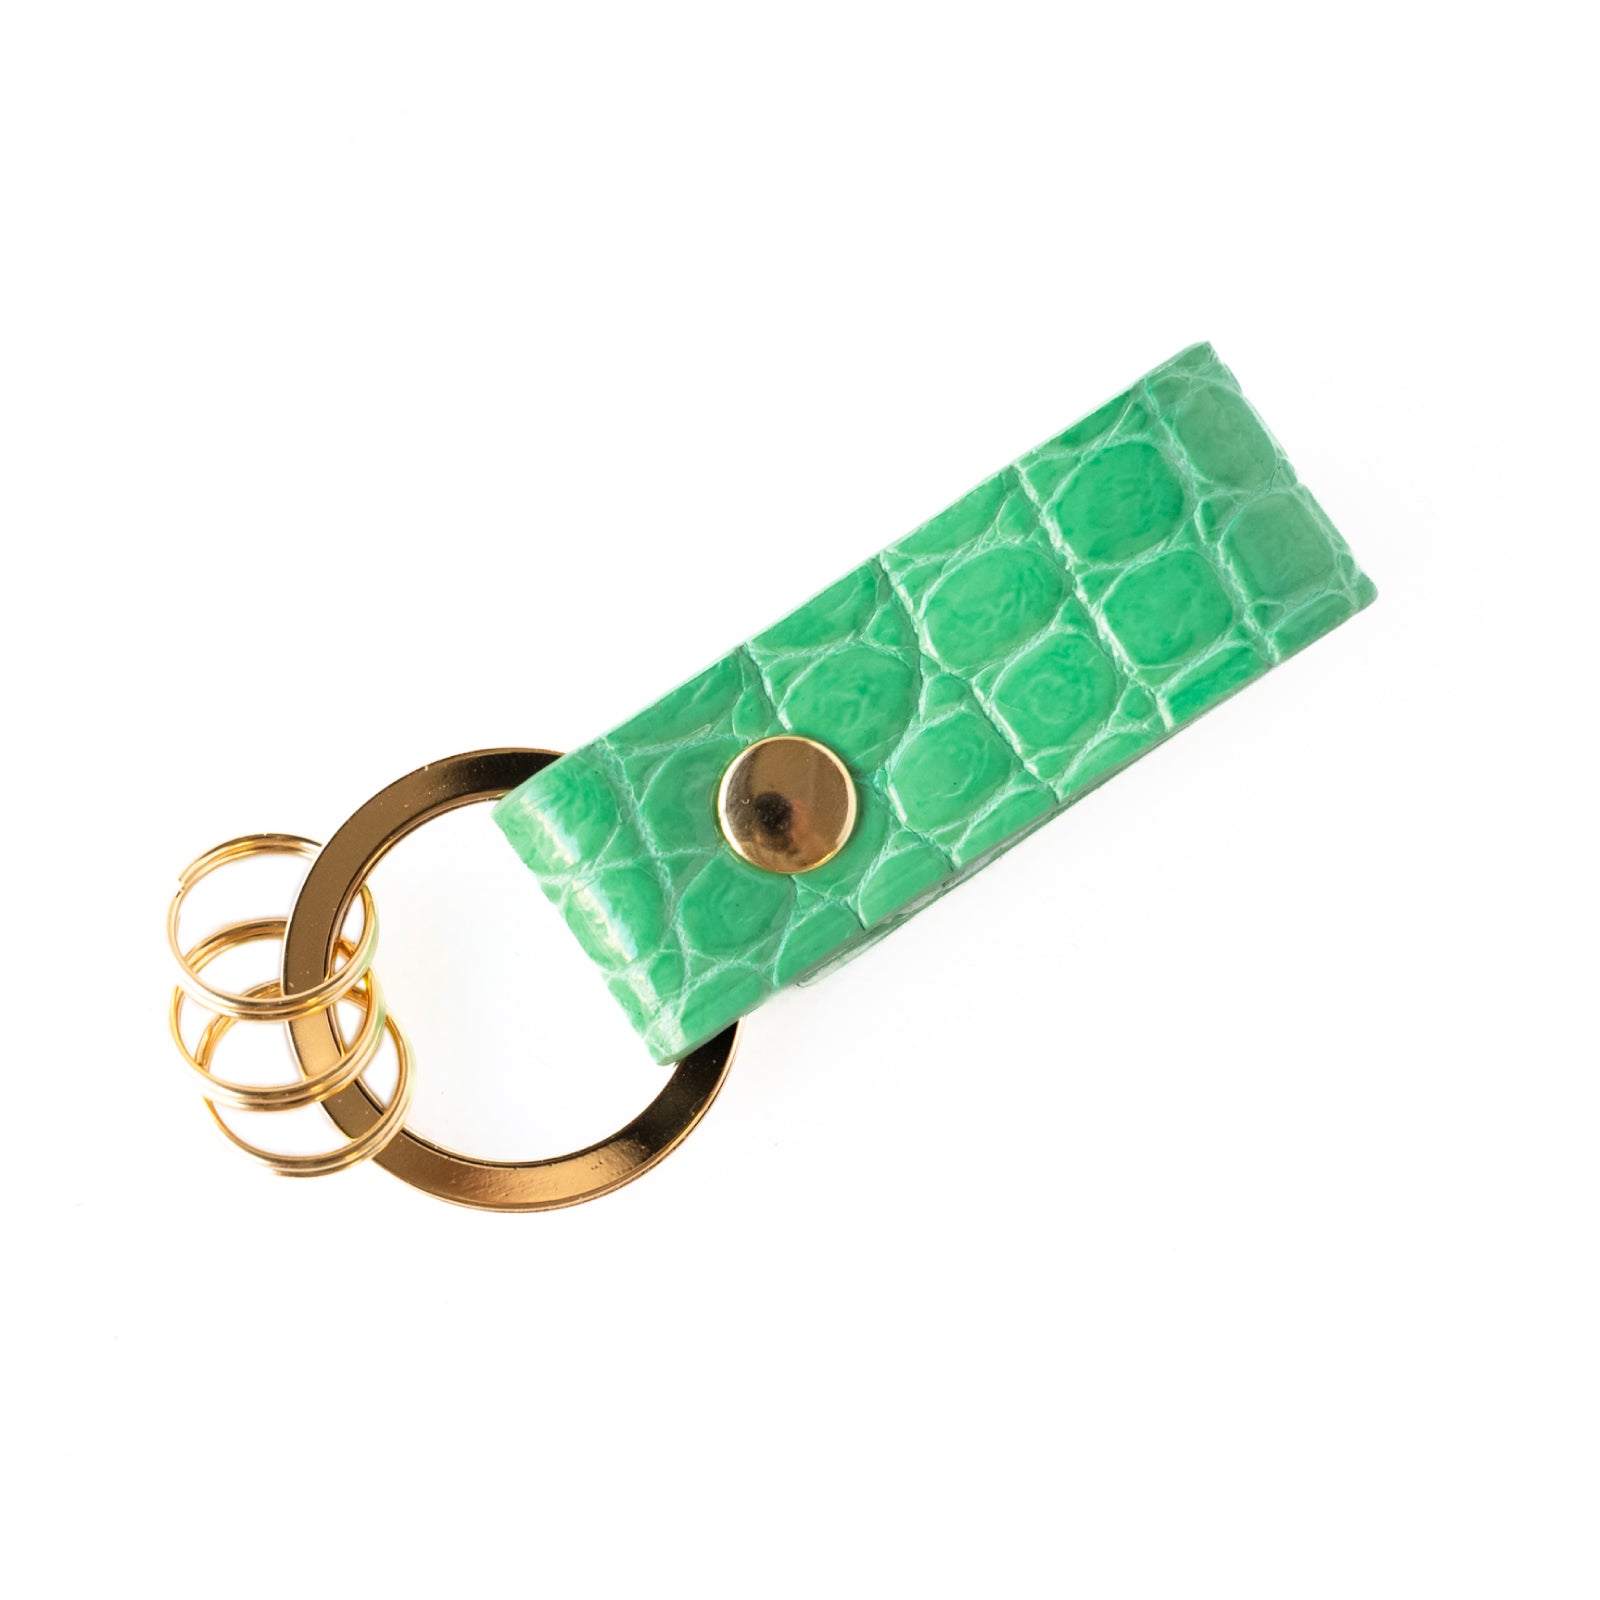 Leather key ring Crocodile (shiny) / Turquoise